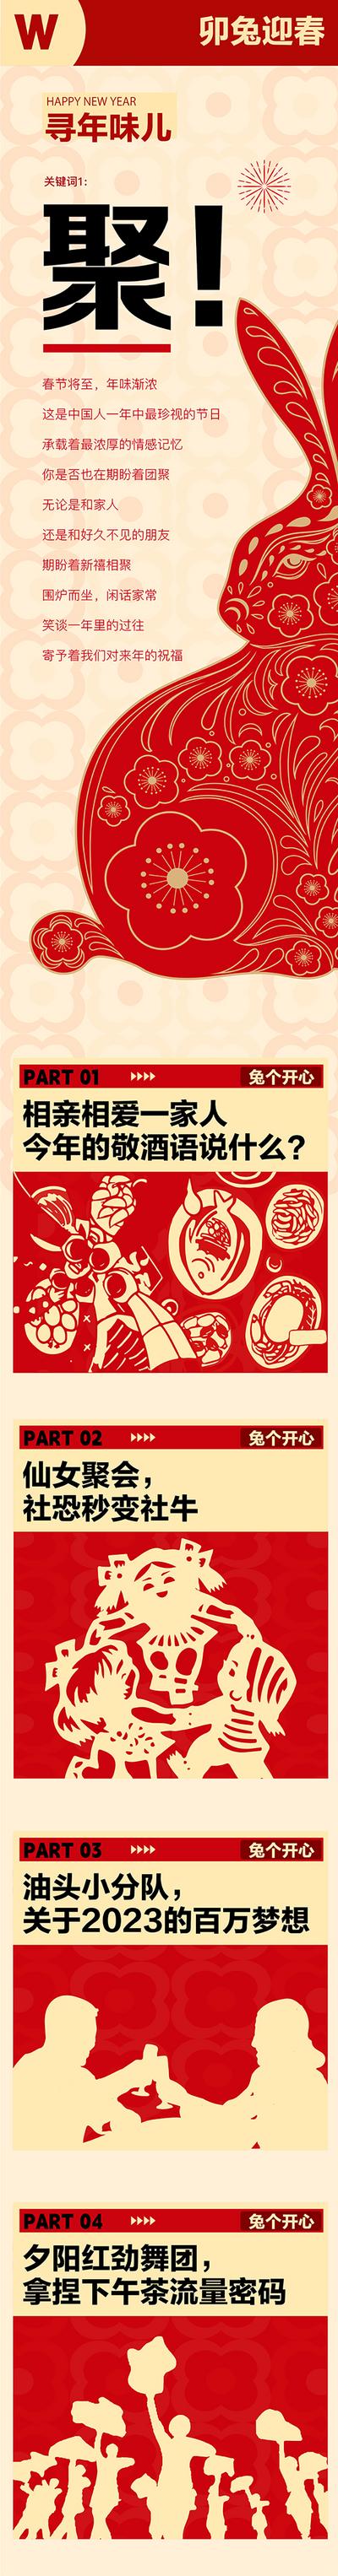 南门网 专题设计 长图 中国传统节日 兔年 春节 剪纸艺术